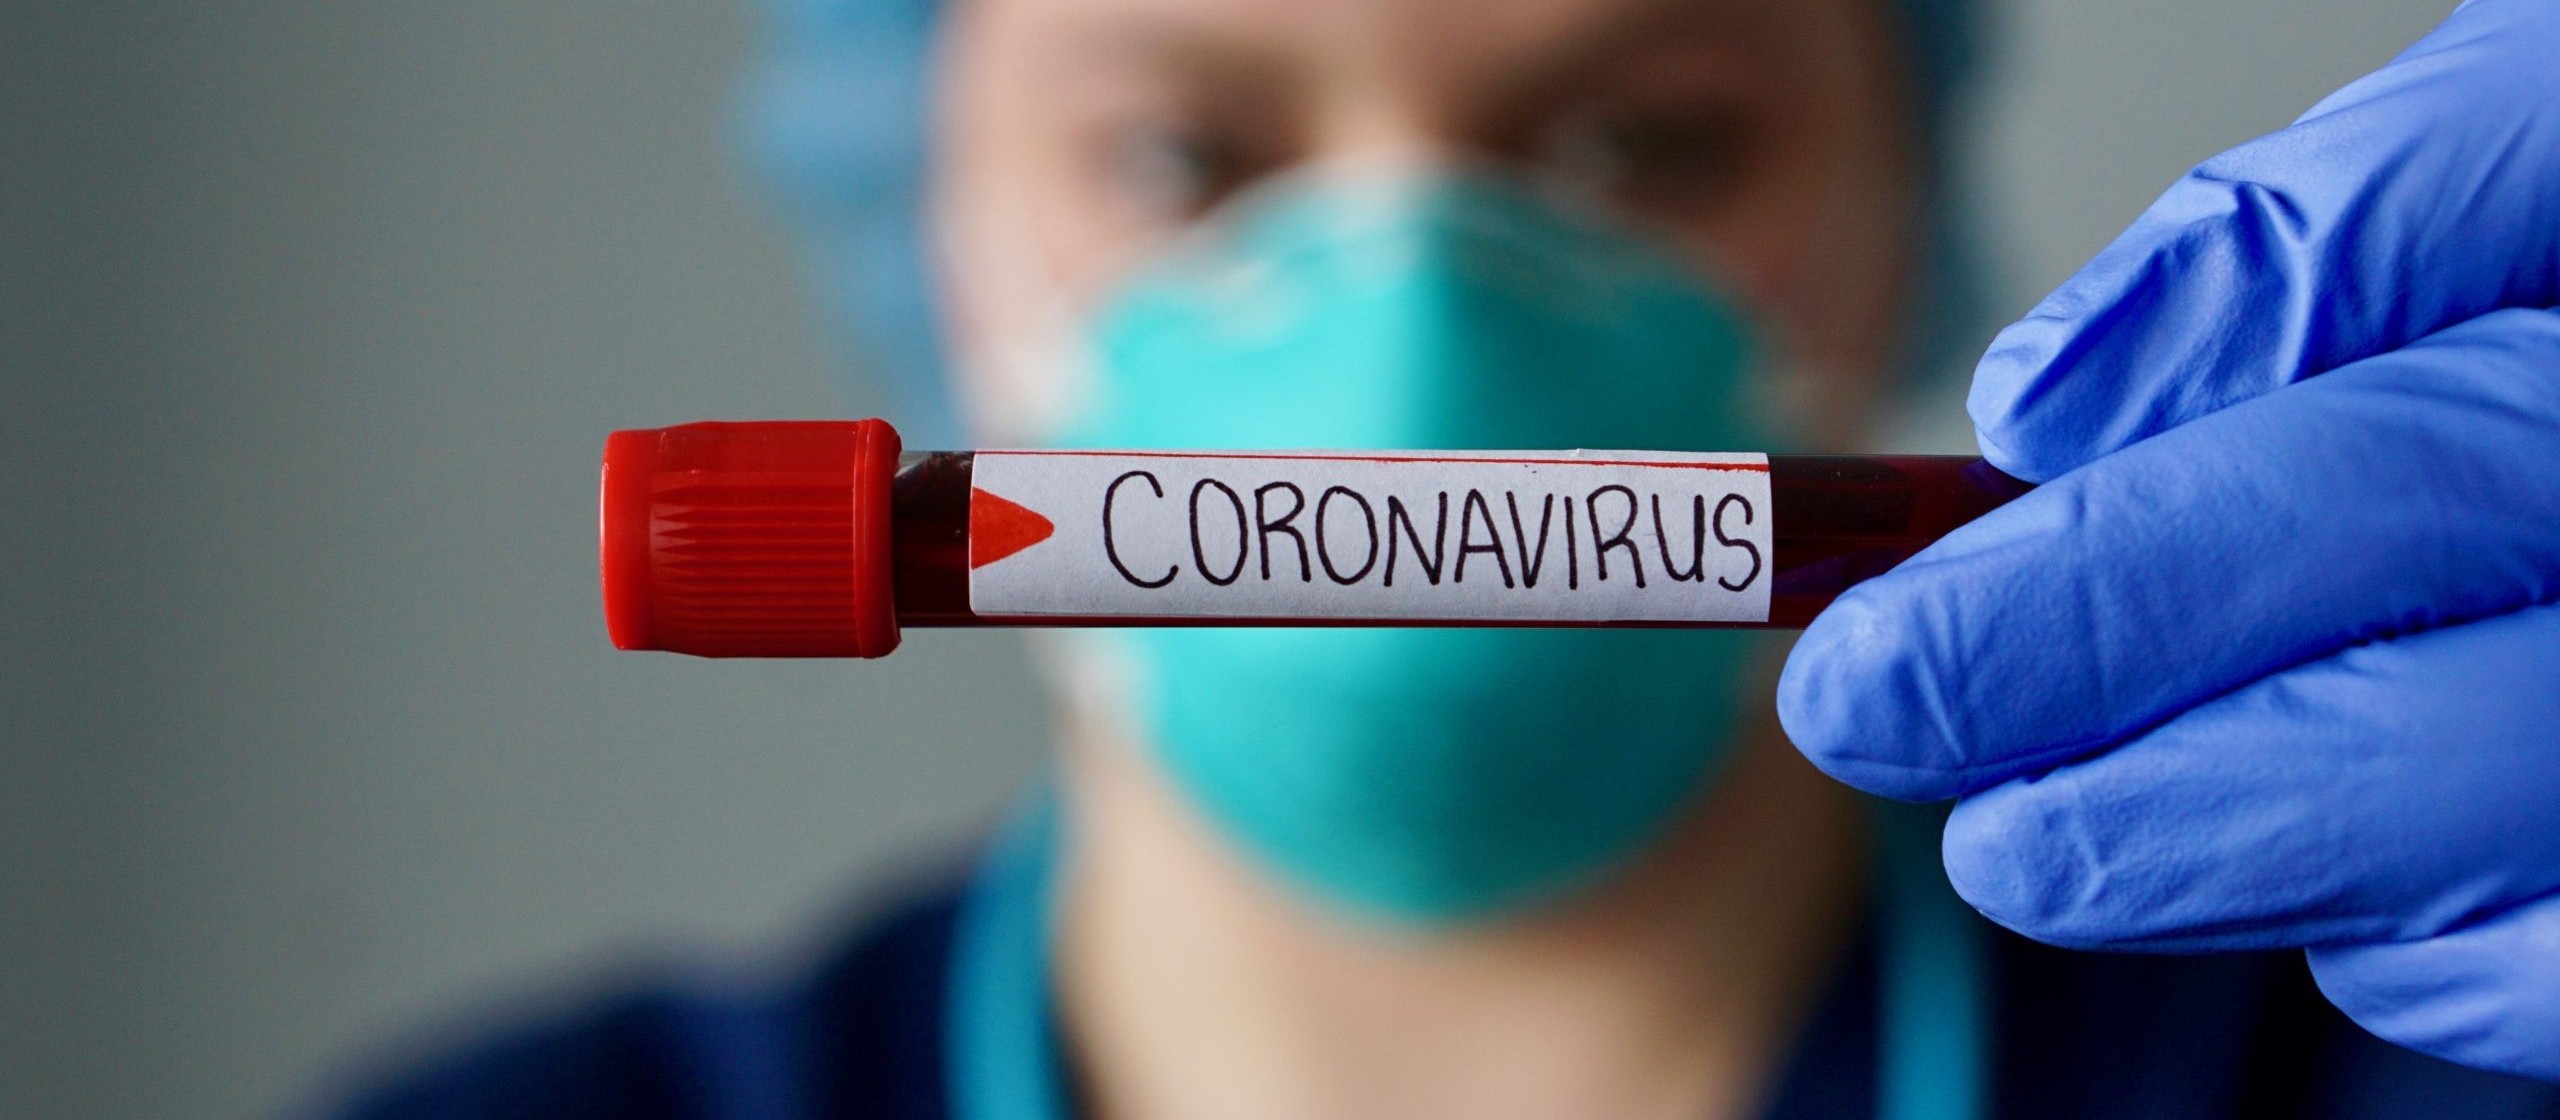 Maringá: 10 crianças estão internadas com suspeita de coronavírus